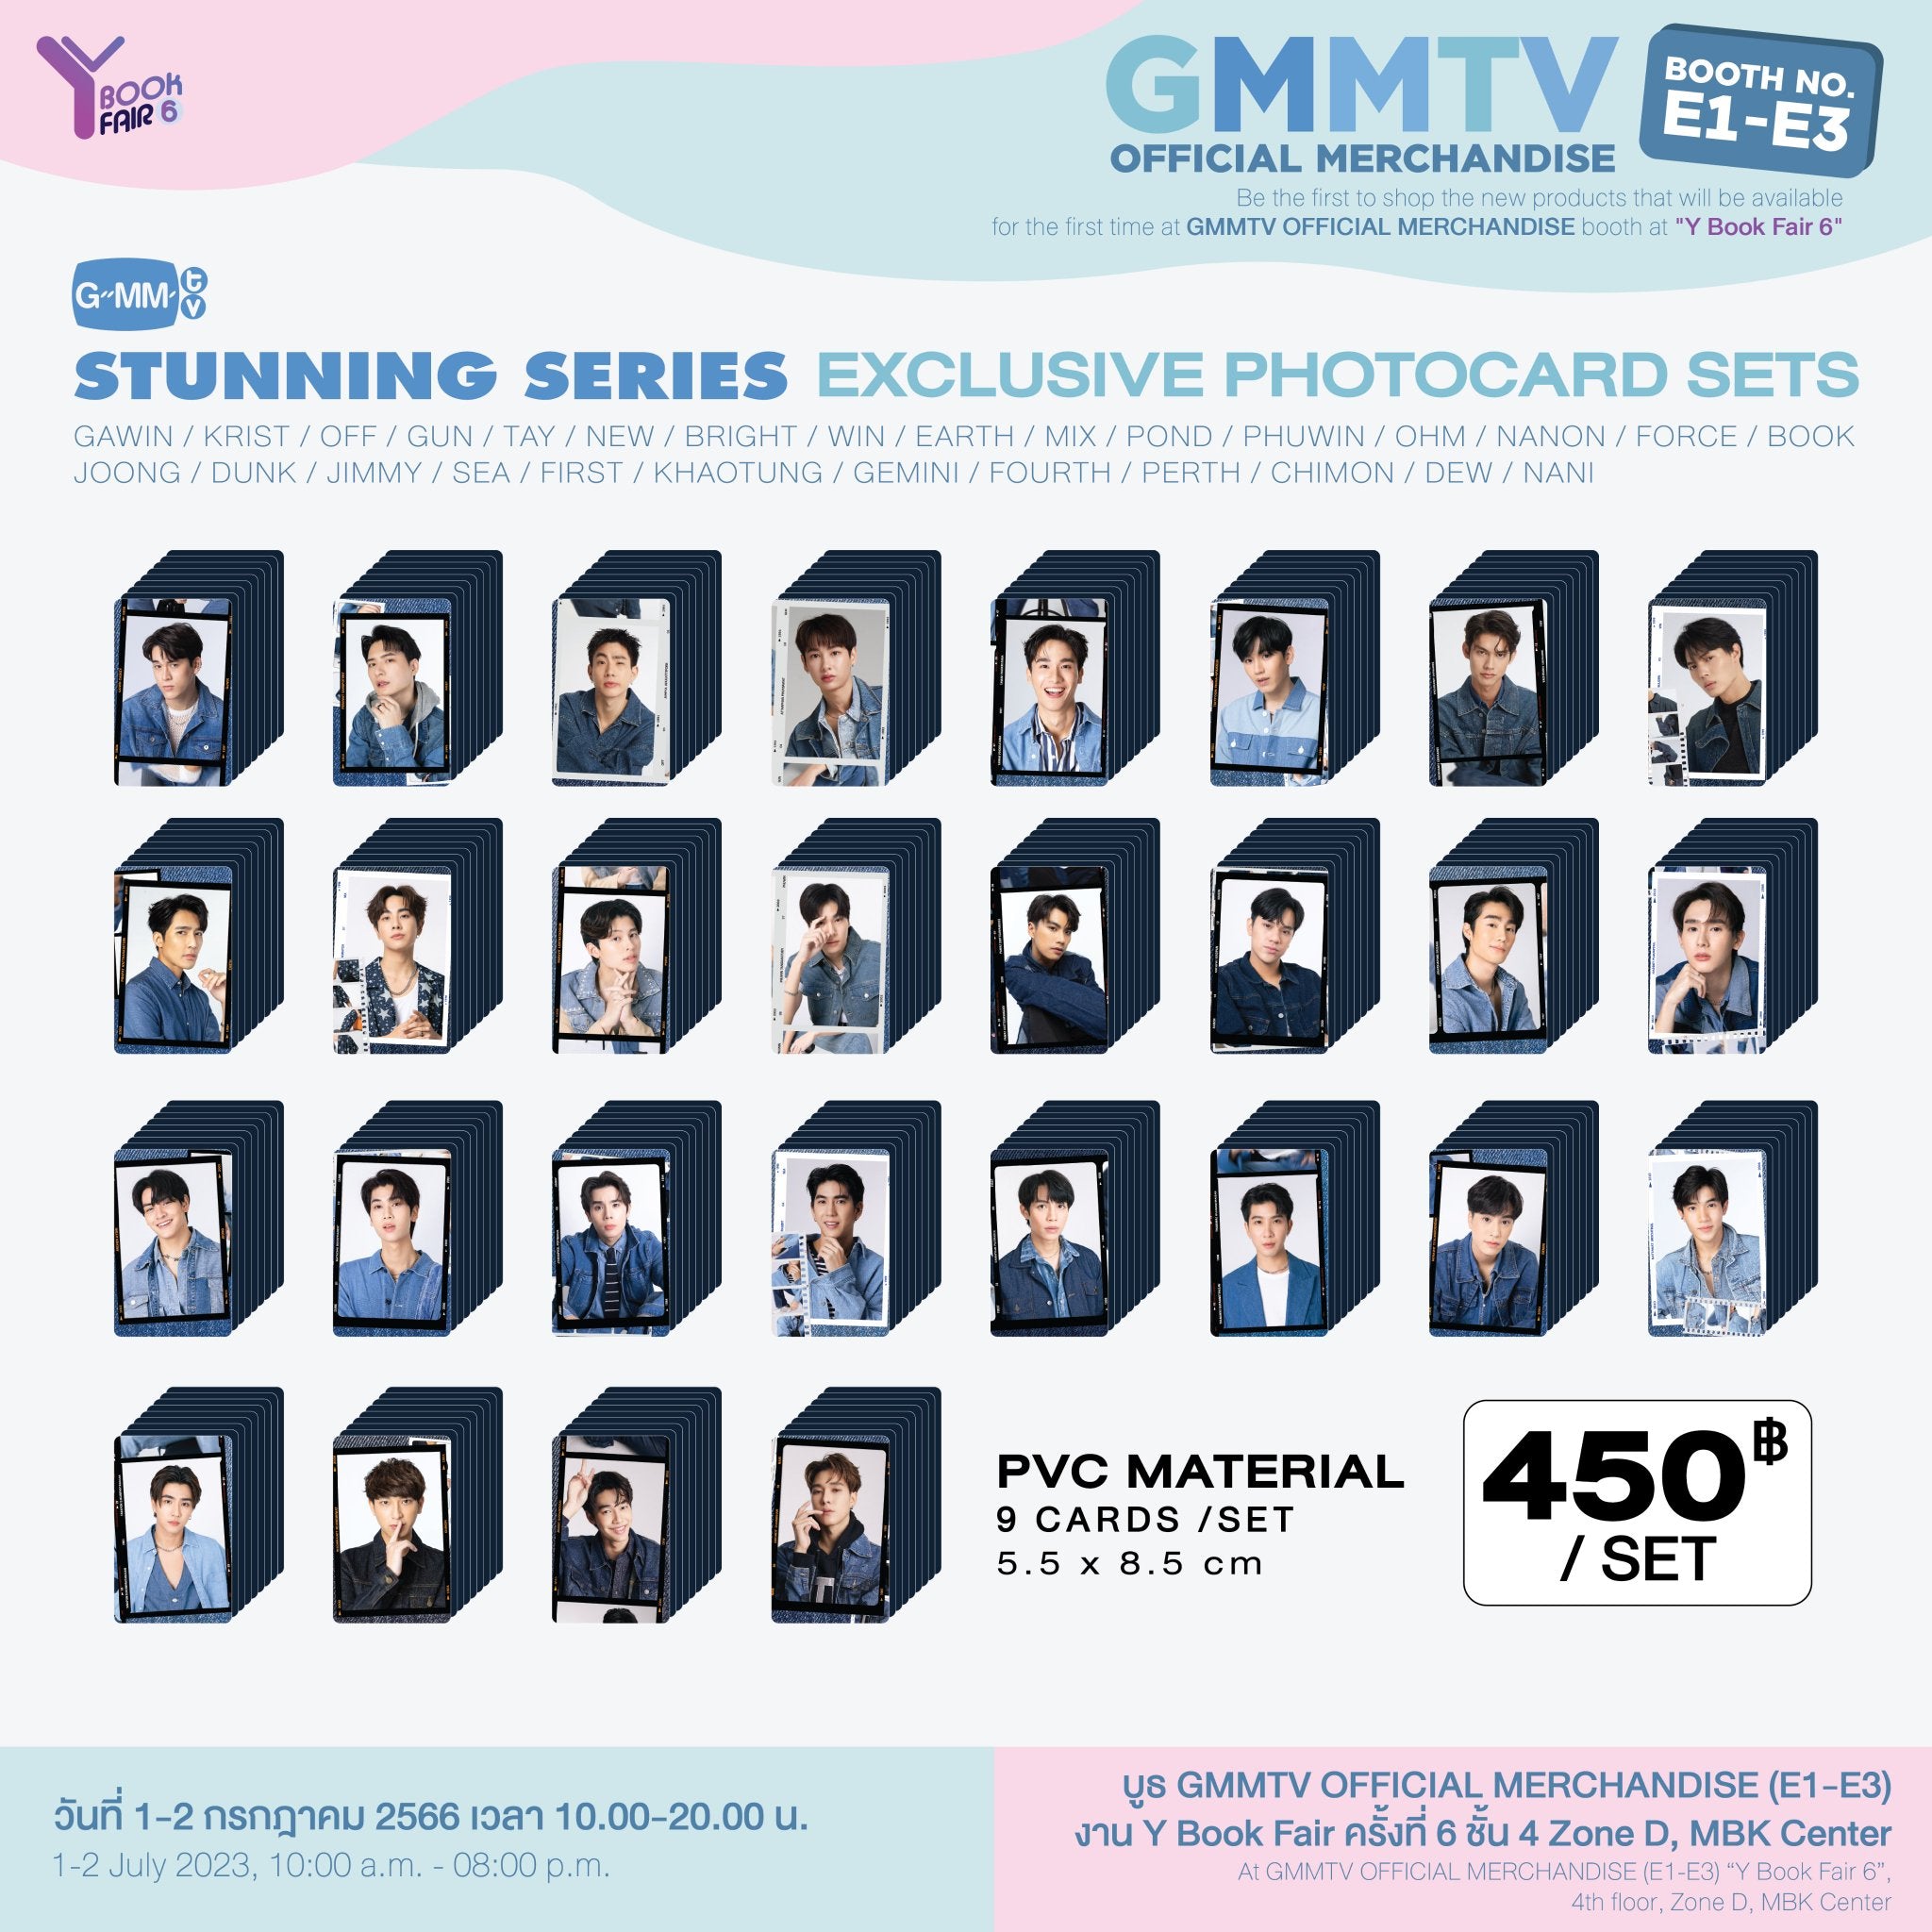 GMMTV STUNNING SERIES YBOOKFAIR6 Photocard Set ...